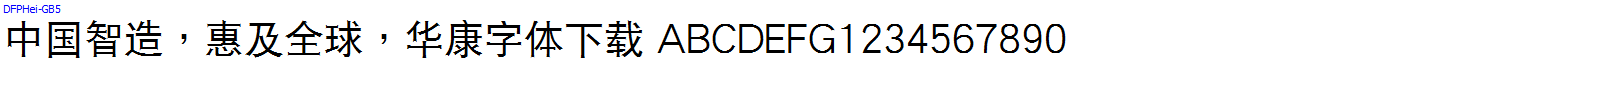 華康字體DFPHei-GB5.TTF